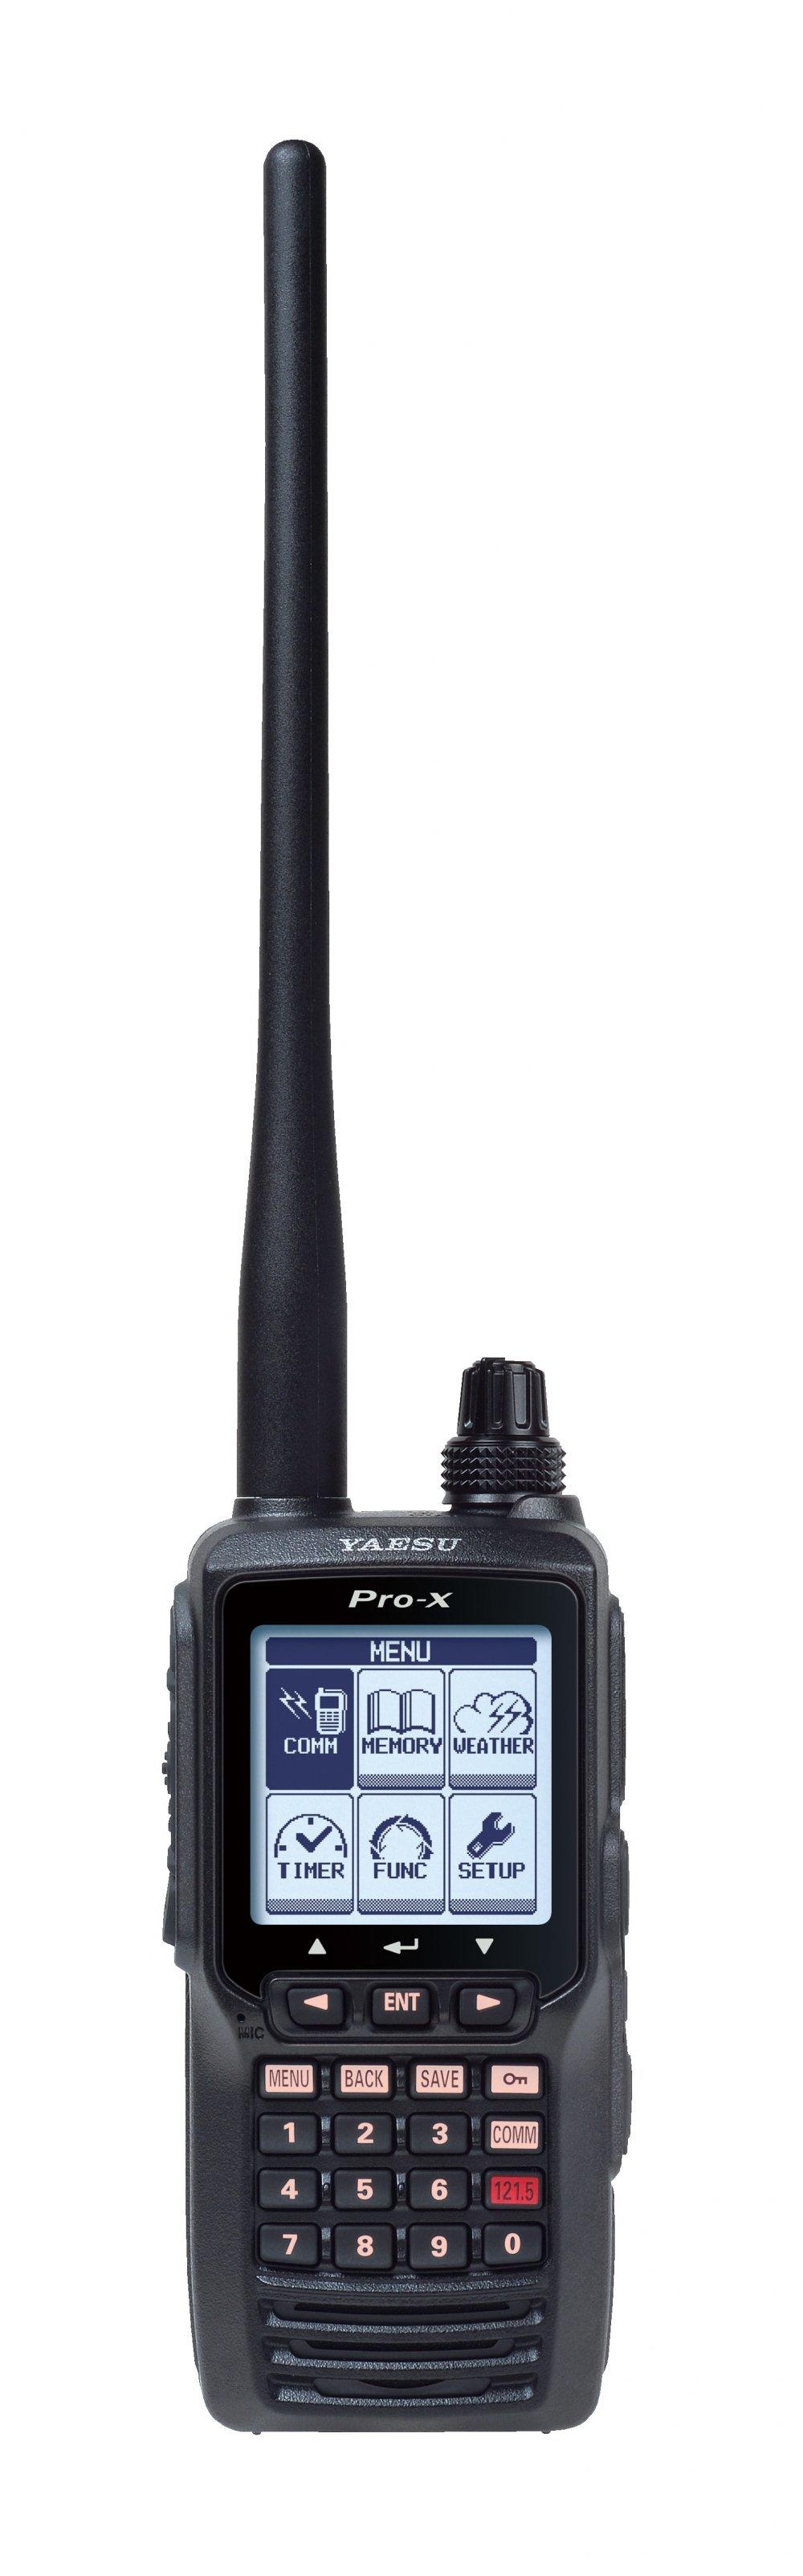 Airband Handheld and Base Radios